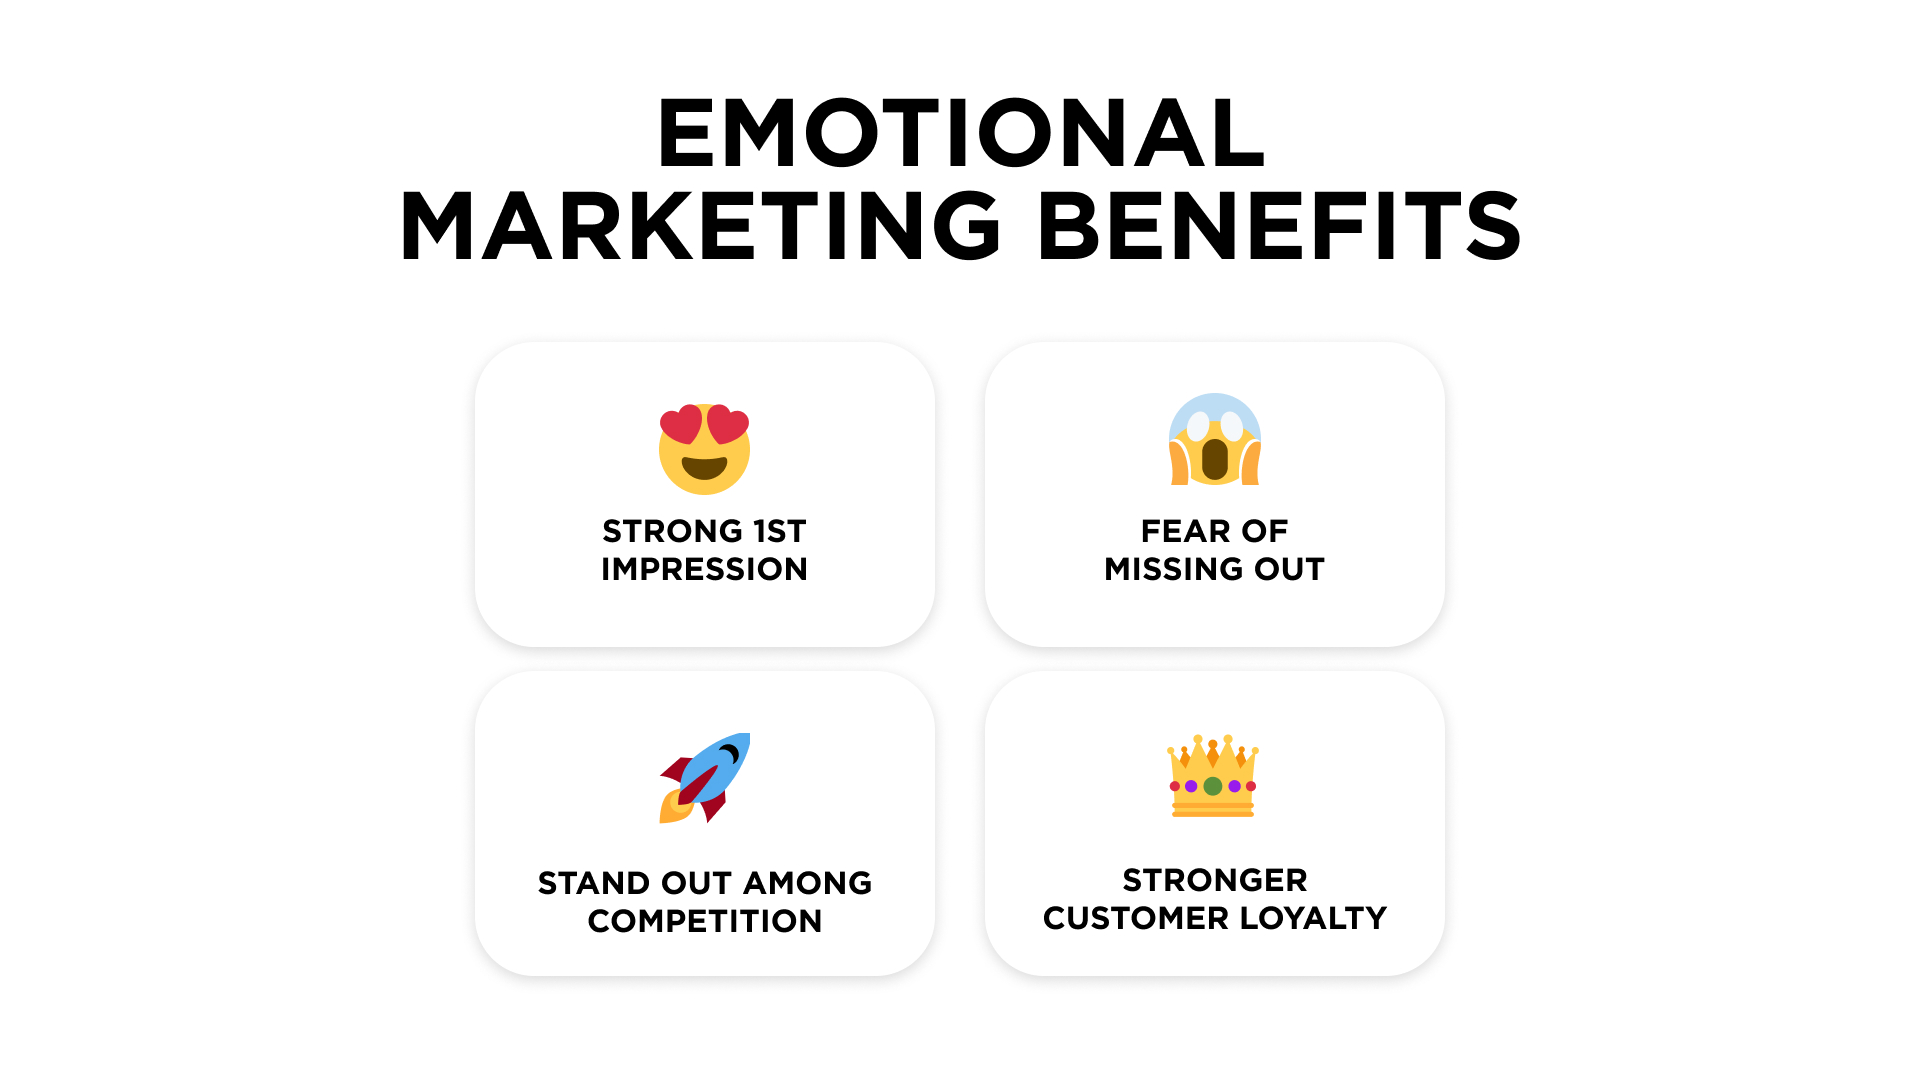 Emotional marketing benefits